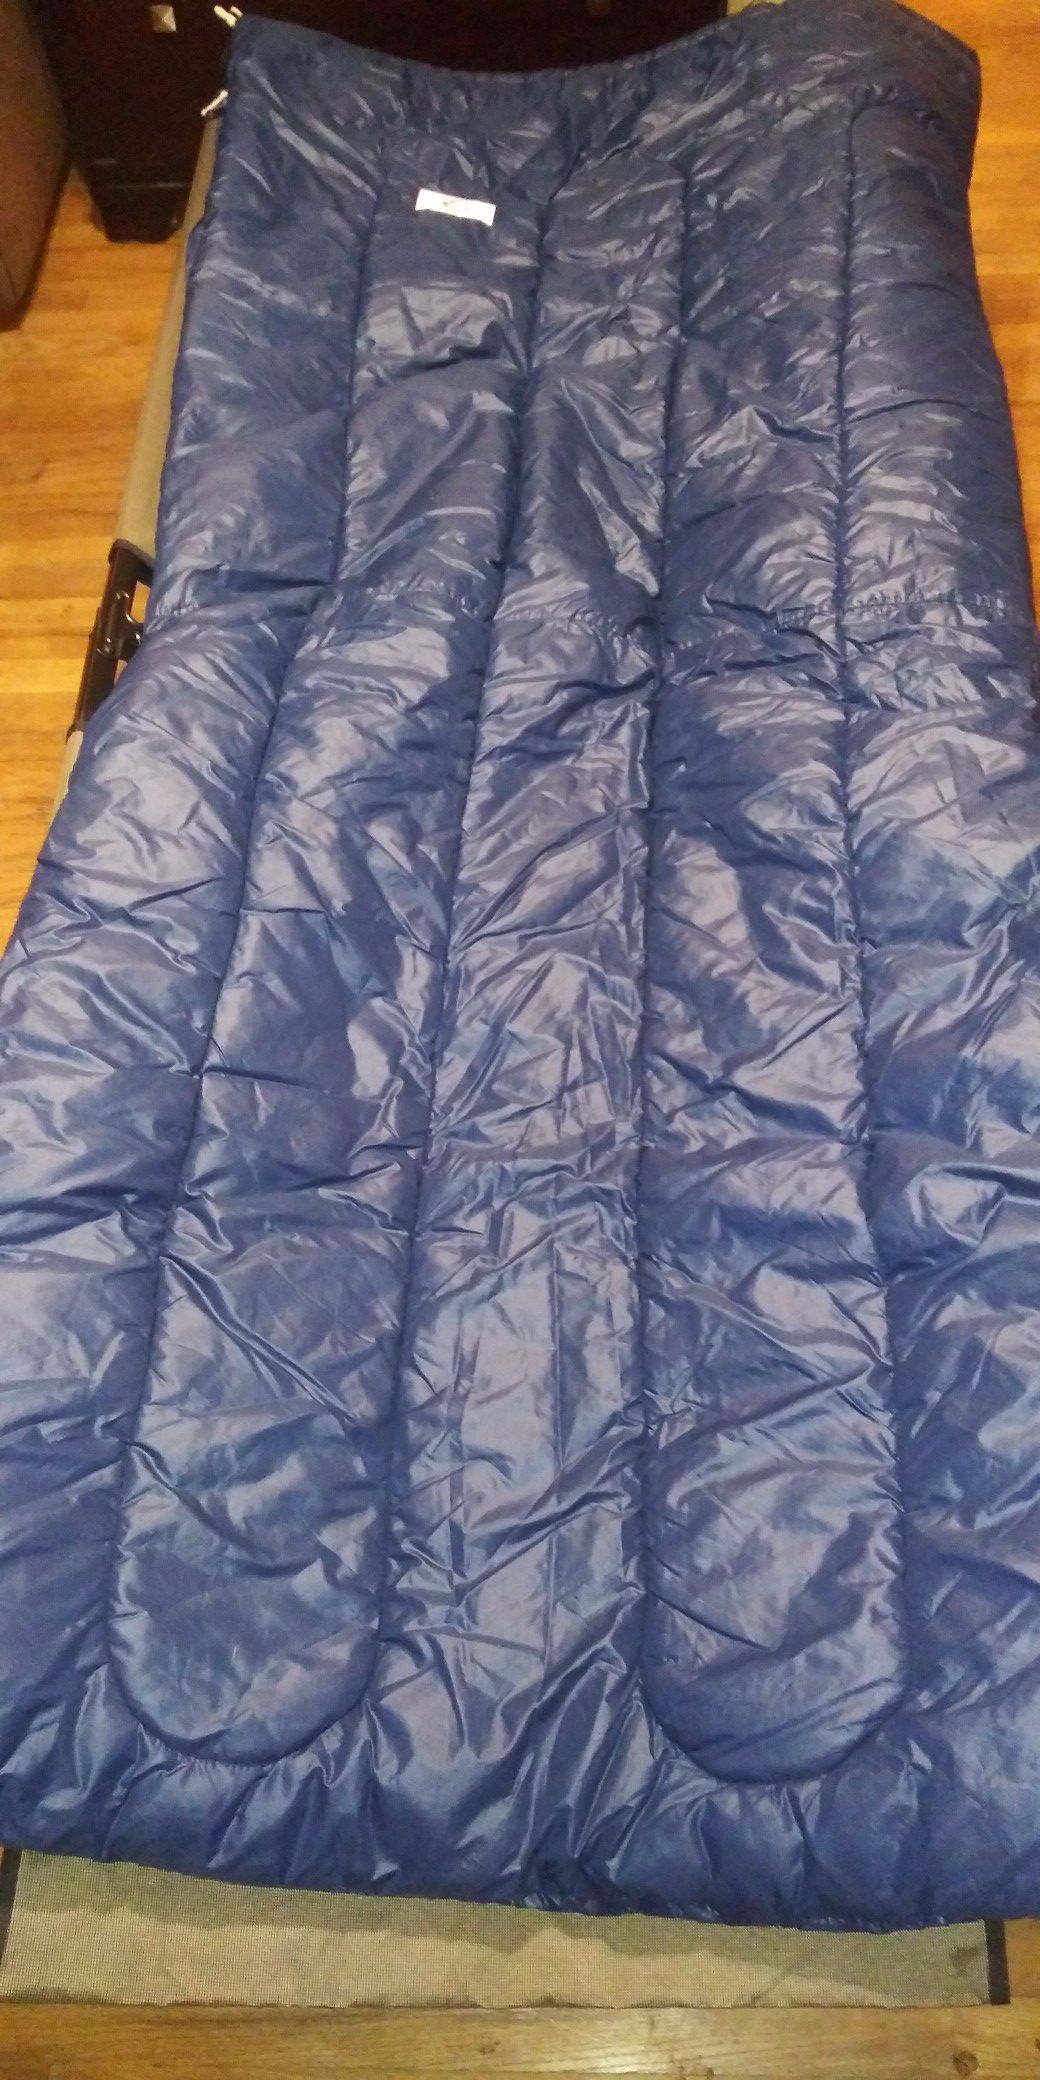 Slumberjack rectangle sleeping bag